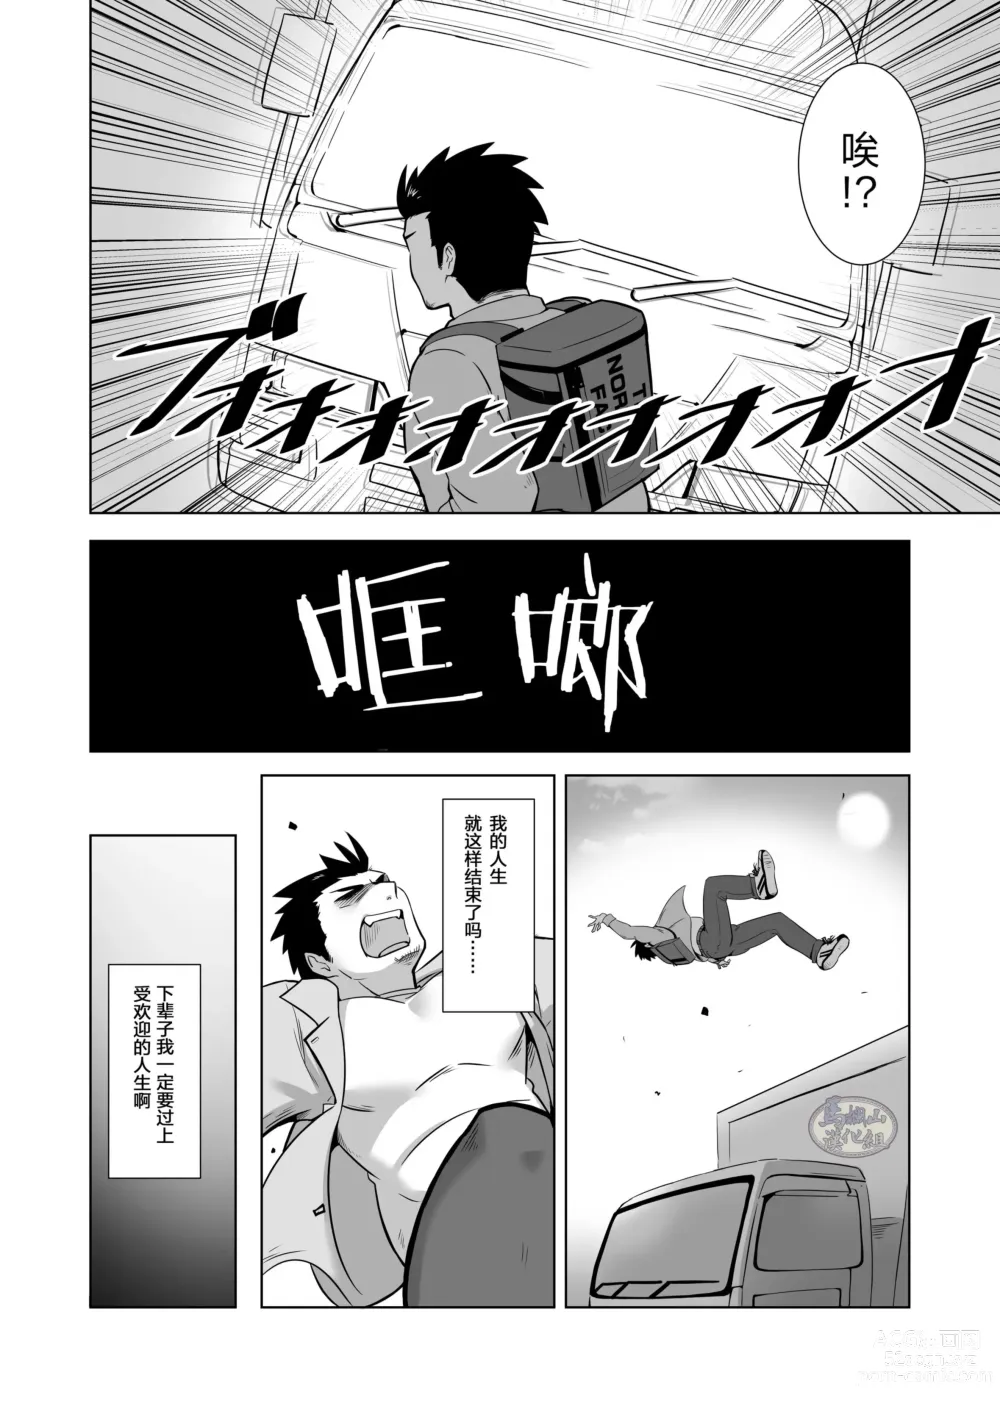 Page 4 of doujinshi 关于我在转生之后身边全是肌肉男的奇闻轶事